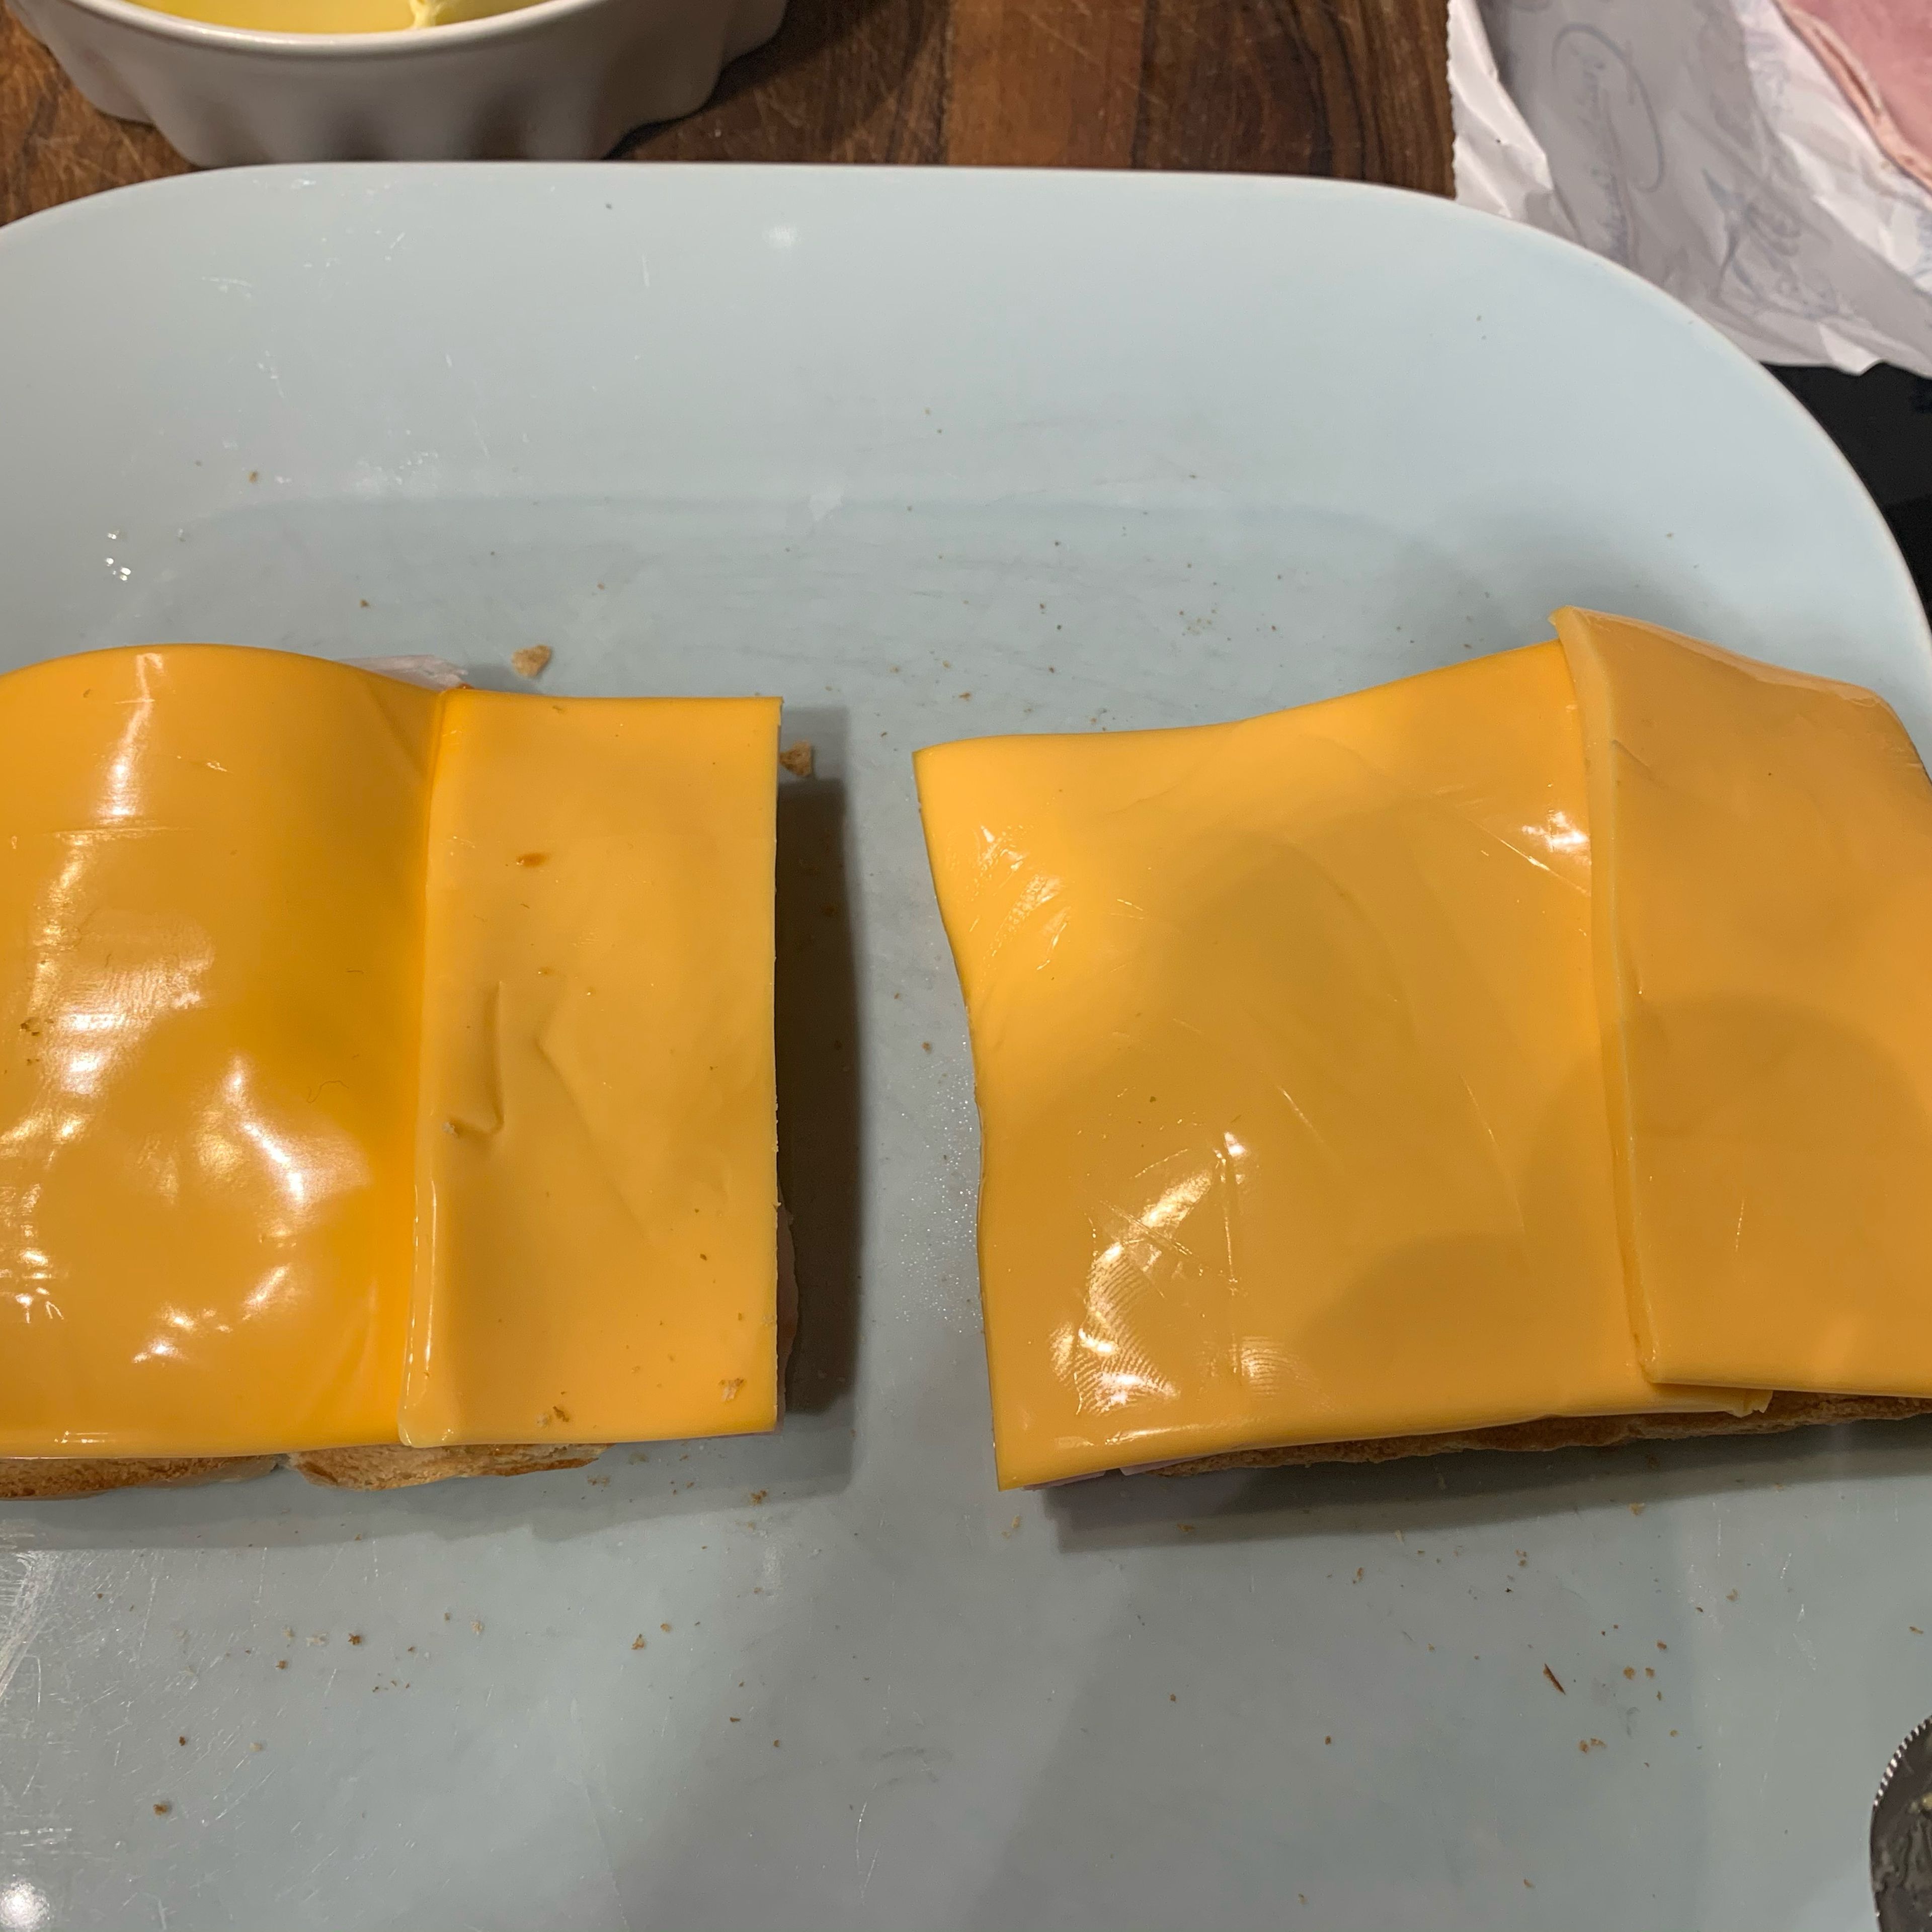 Den Schmelzkäse so verteilen das alles gut bedeckt ist. Meistens braucht man dazu 1 1/2 Scheiben. Den Käse nicht aus der Packung nehmen sondern frisch von der Käsetheke kaufen, schmeckt besser und man hat genau die Menge die man braucht.